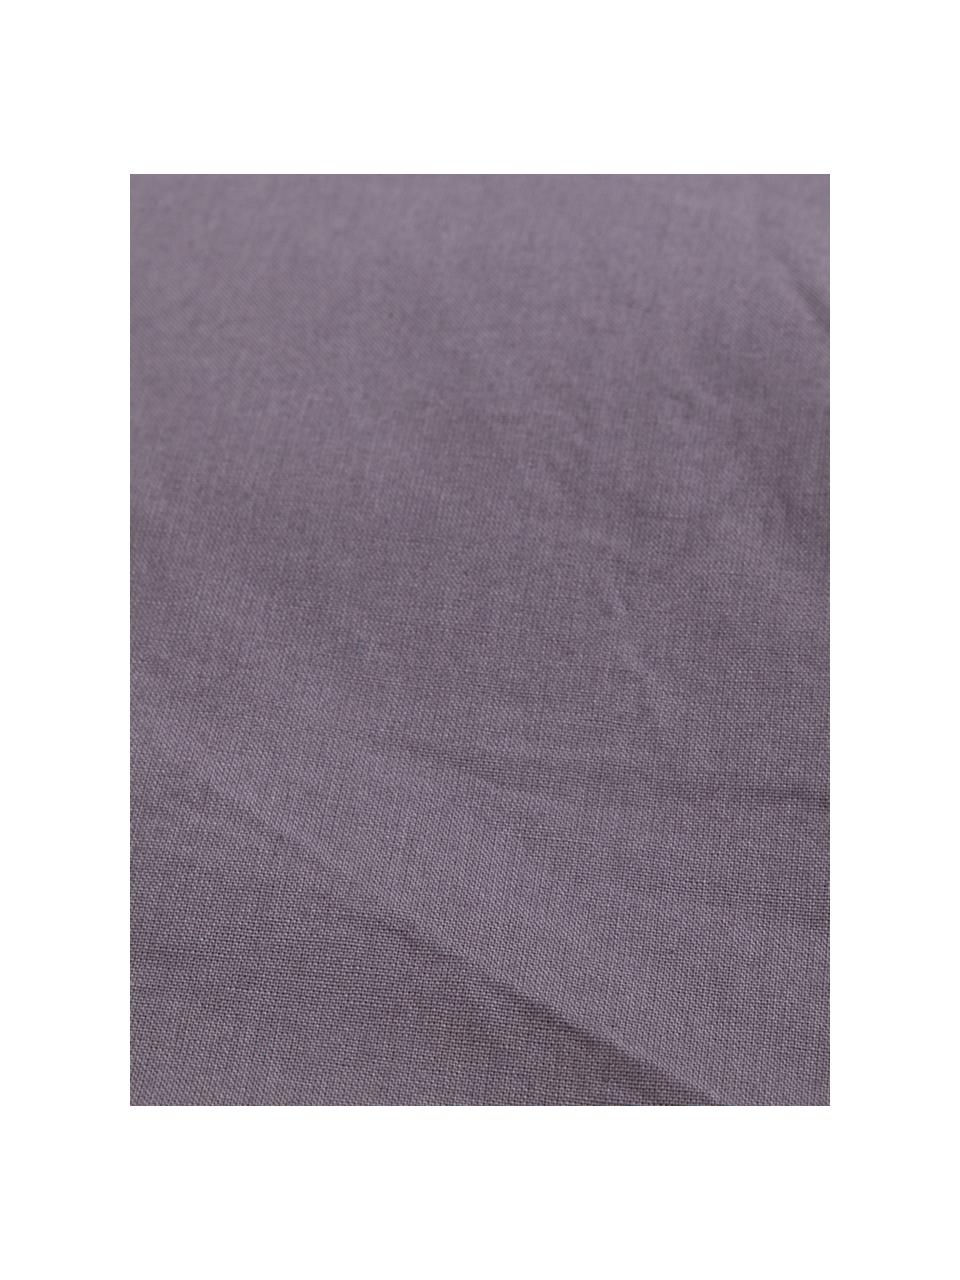 Parure copripiumino in cotone effetto stone washed Velle, Tessuto: cotone ranforce, Fronte e retro: grigio scuro, 155 x 200 cm + 1 federa 50 x 80 cm